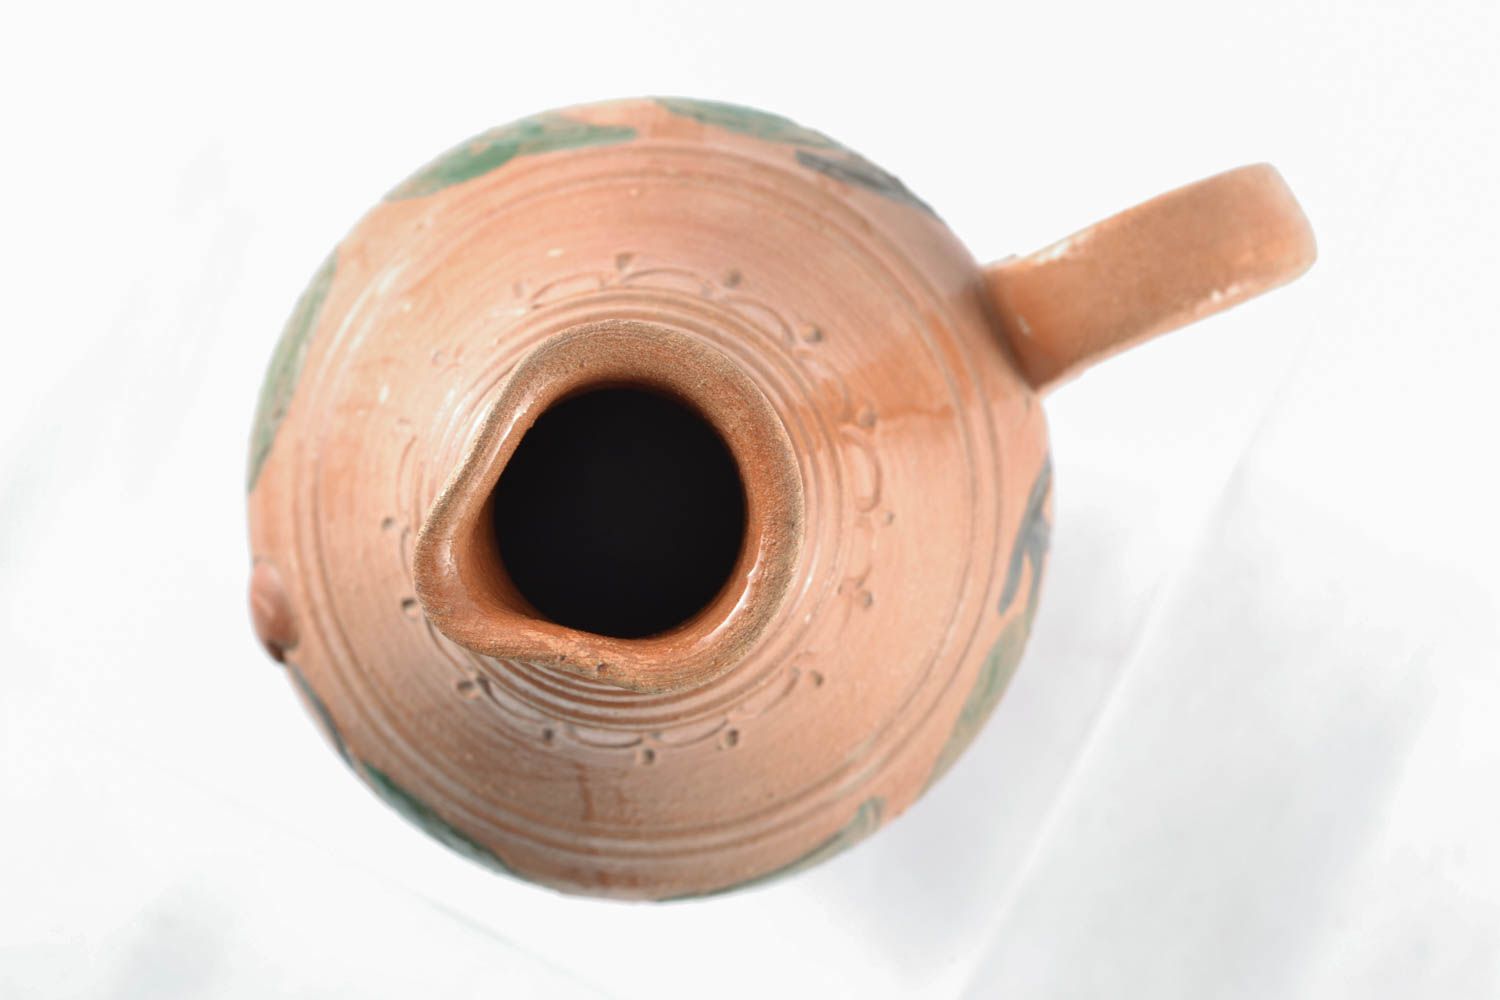 30 oz handmade ceramic terracotta wine bottle for home décor 3 lb photo 3